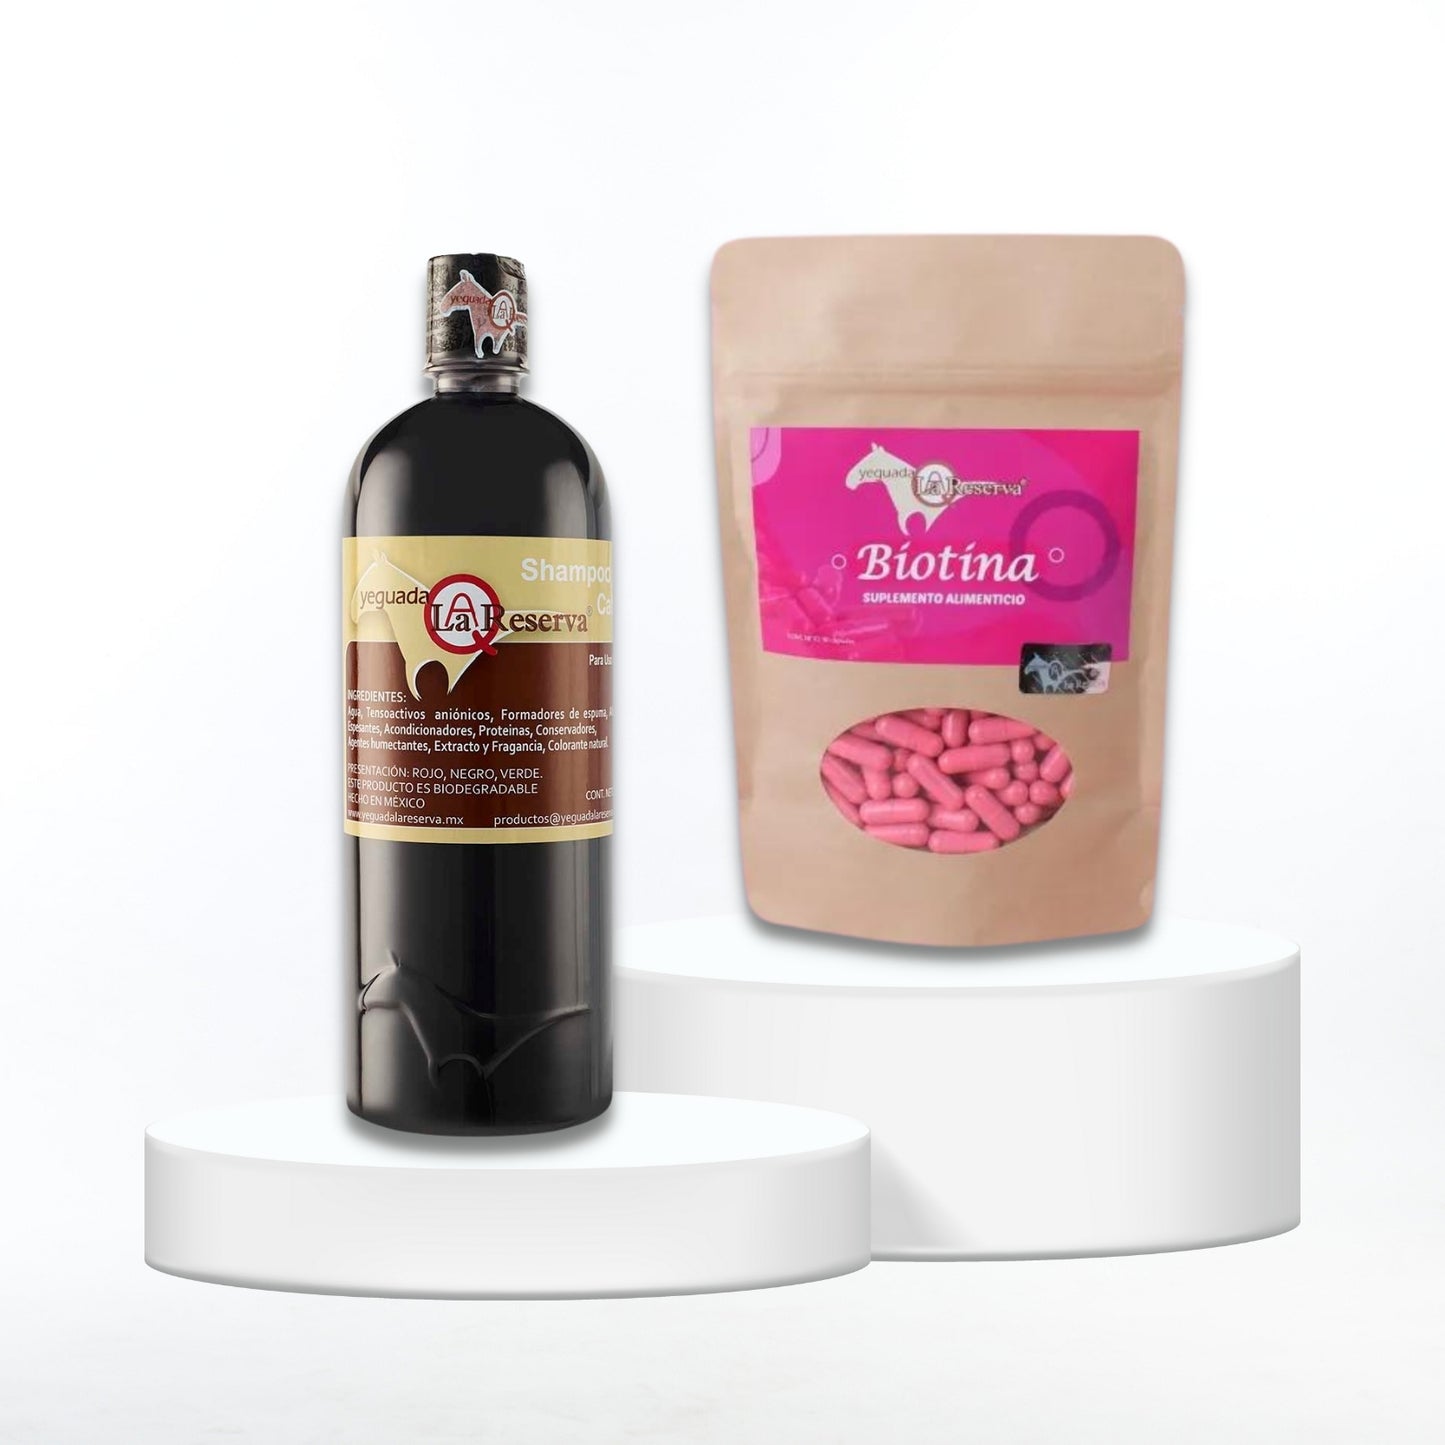 Shampoo + Biotin Kit